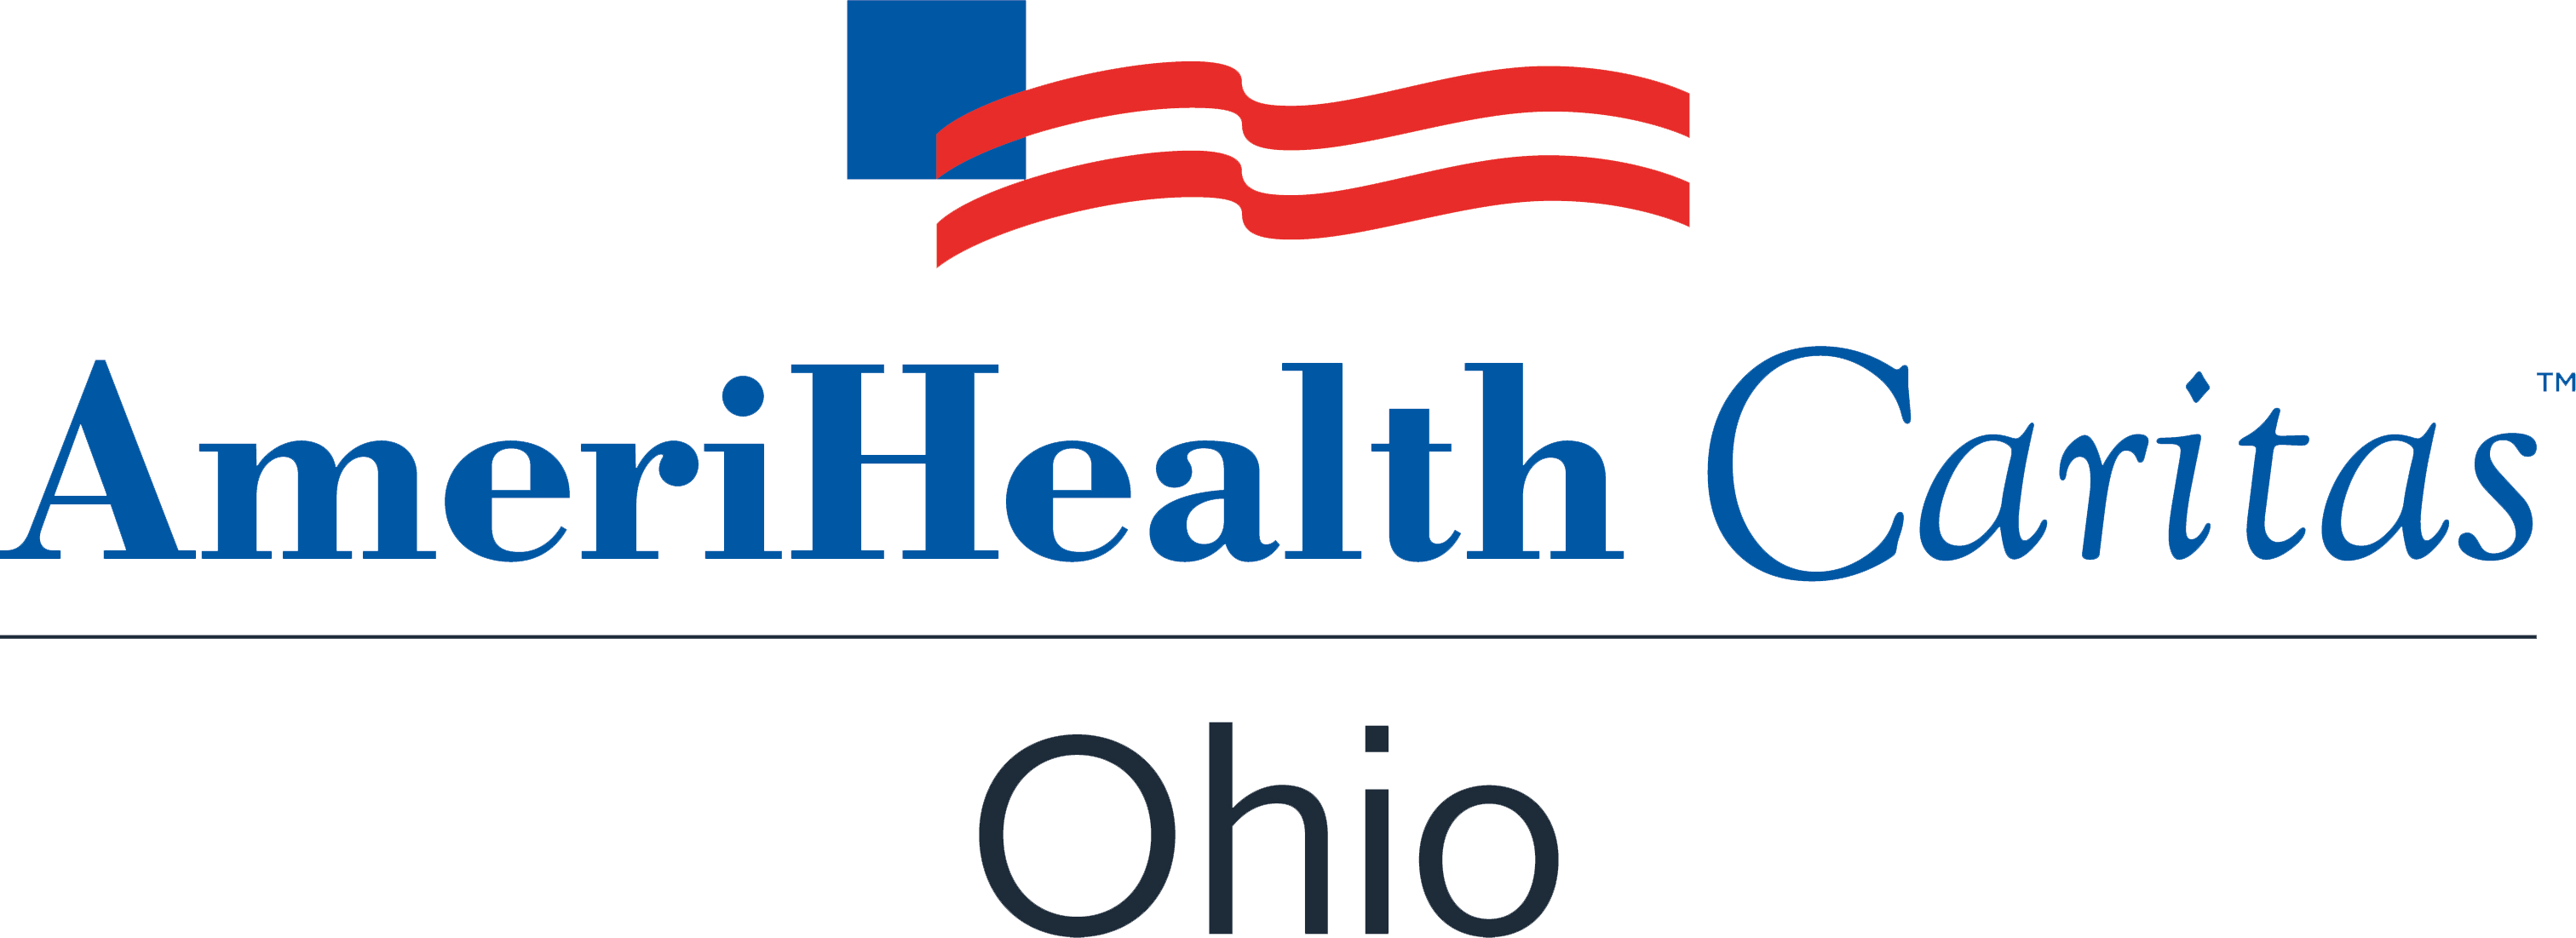 AmeriHealth Caritas Ohio logo